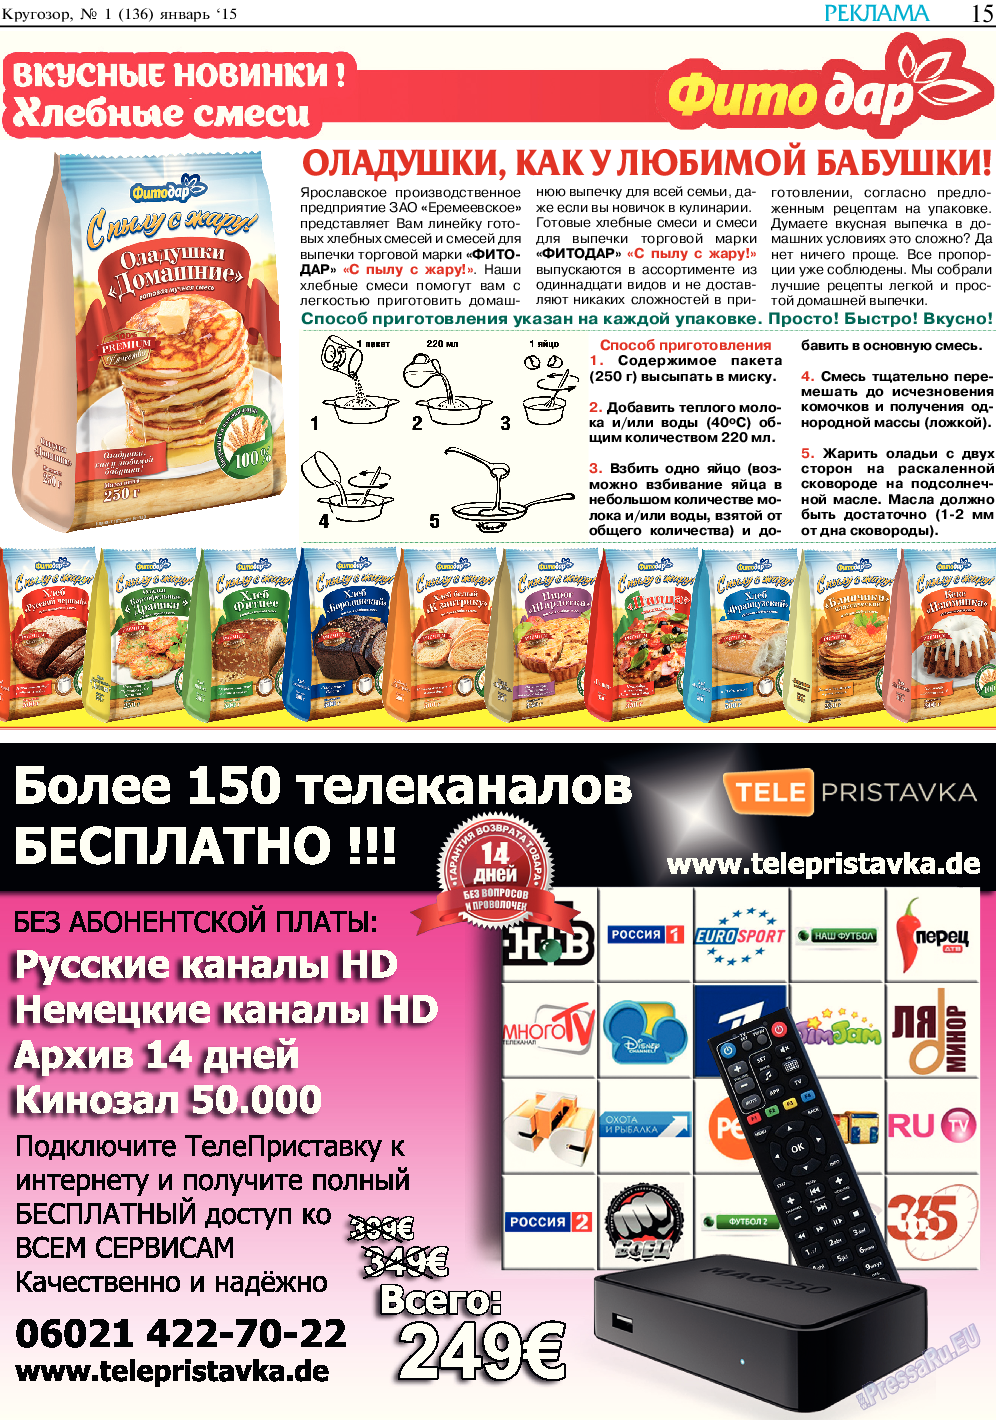 Кругозор, газета. 2015 №1 стр.15